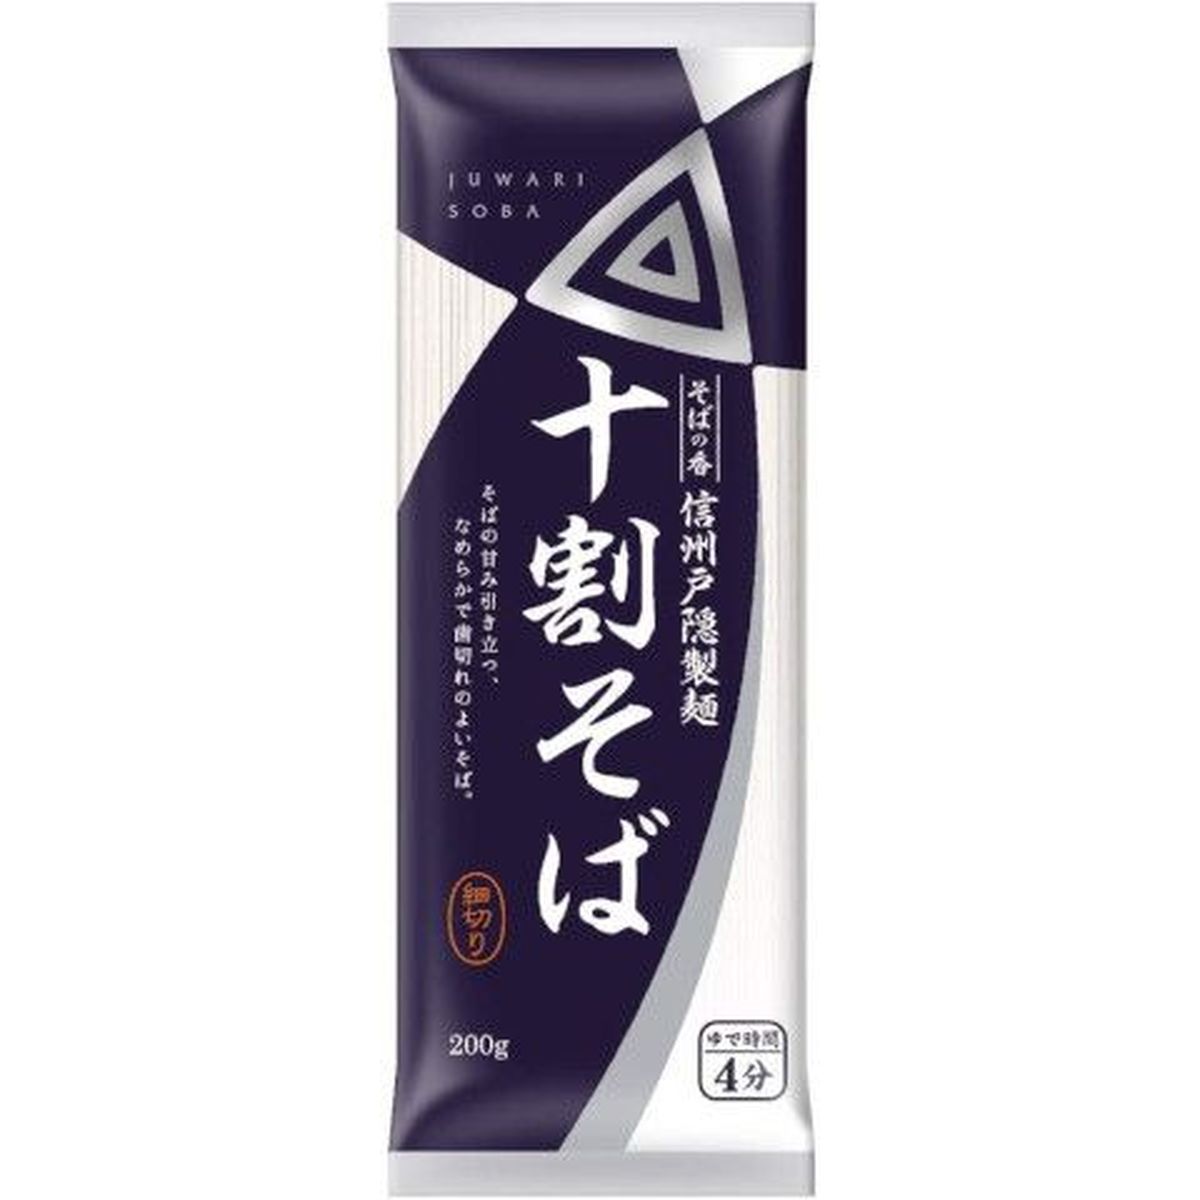 【20個入リ】日清フーズ 信州戸隠製麺 ソバノ香 十割ソバ 200g